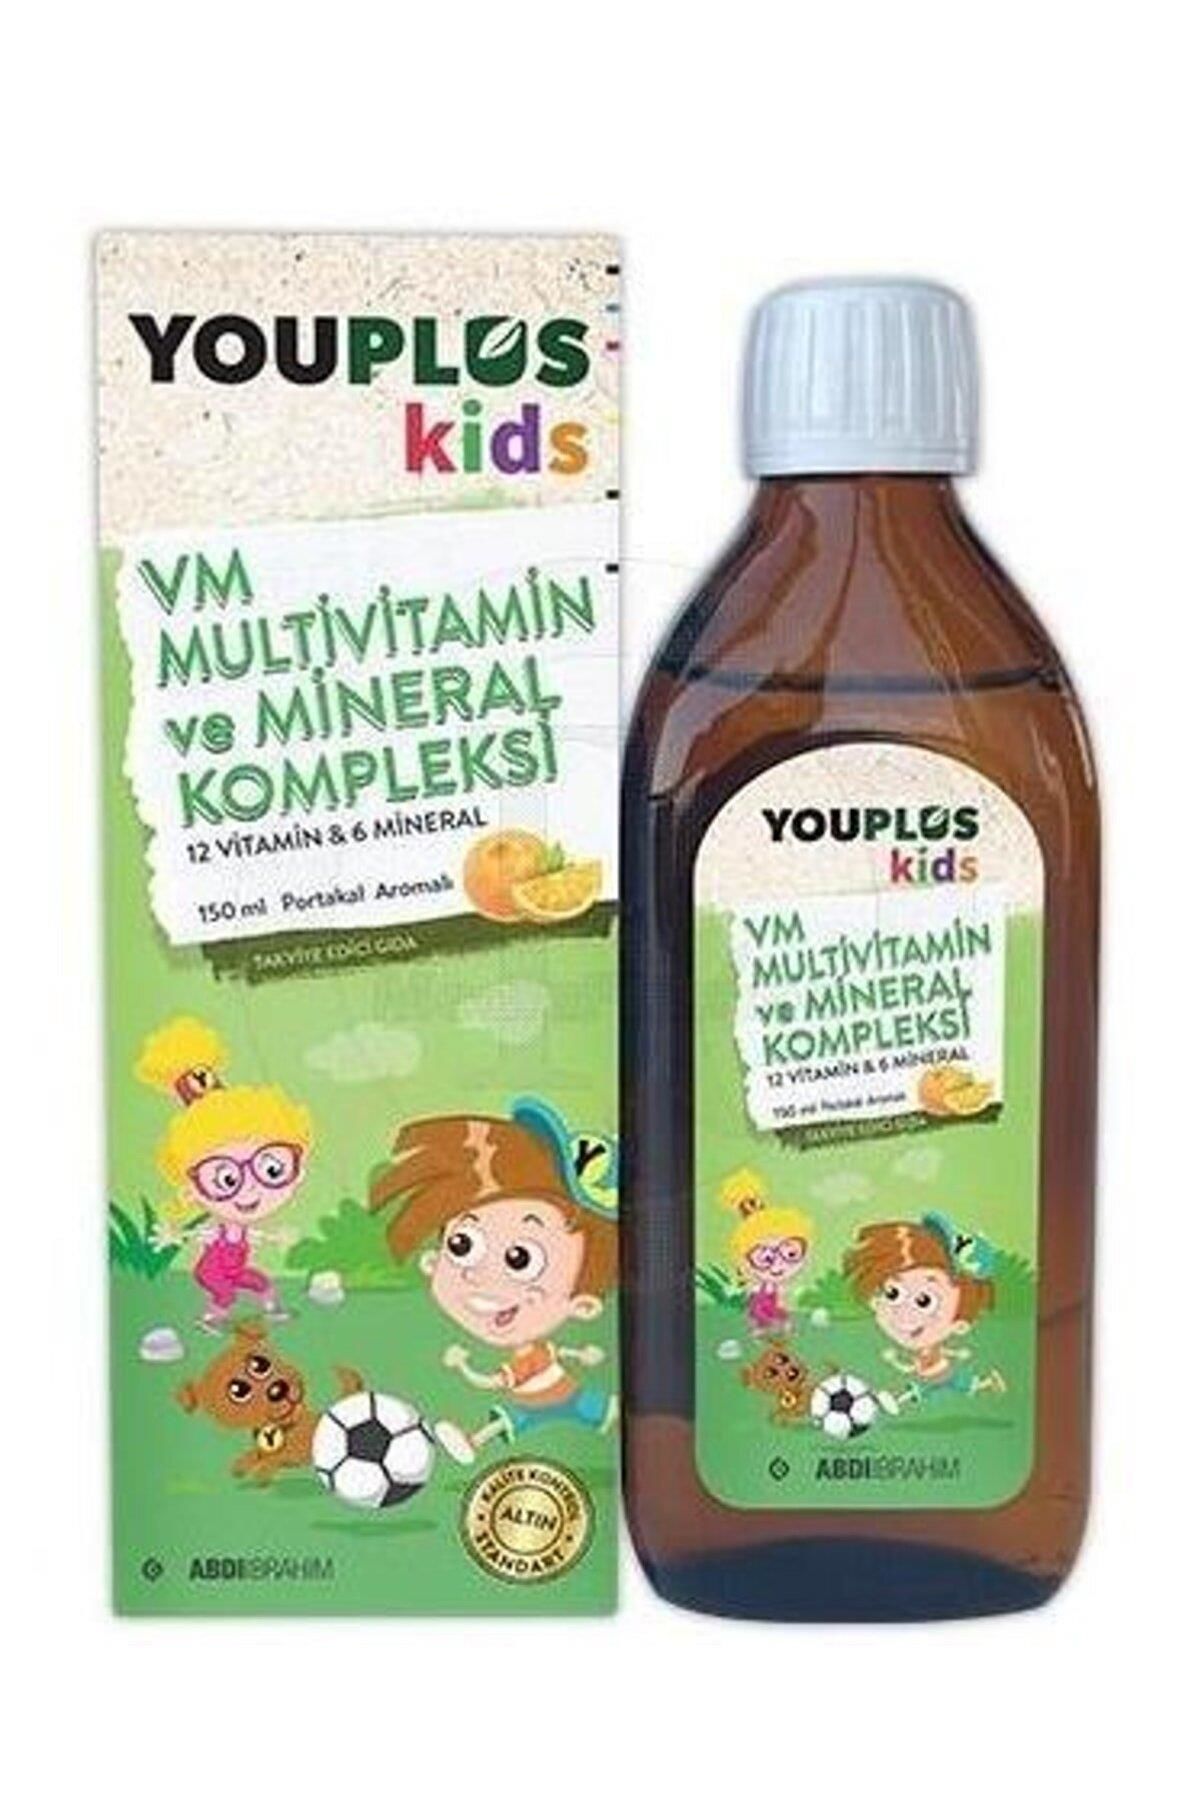 Youplus Kids Vm Multivitamin Ve Mineral Kompleksi 150ml